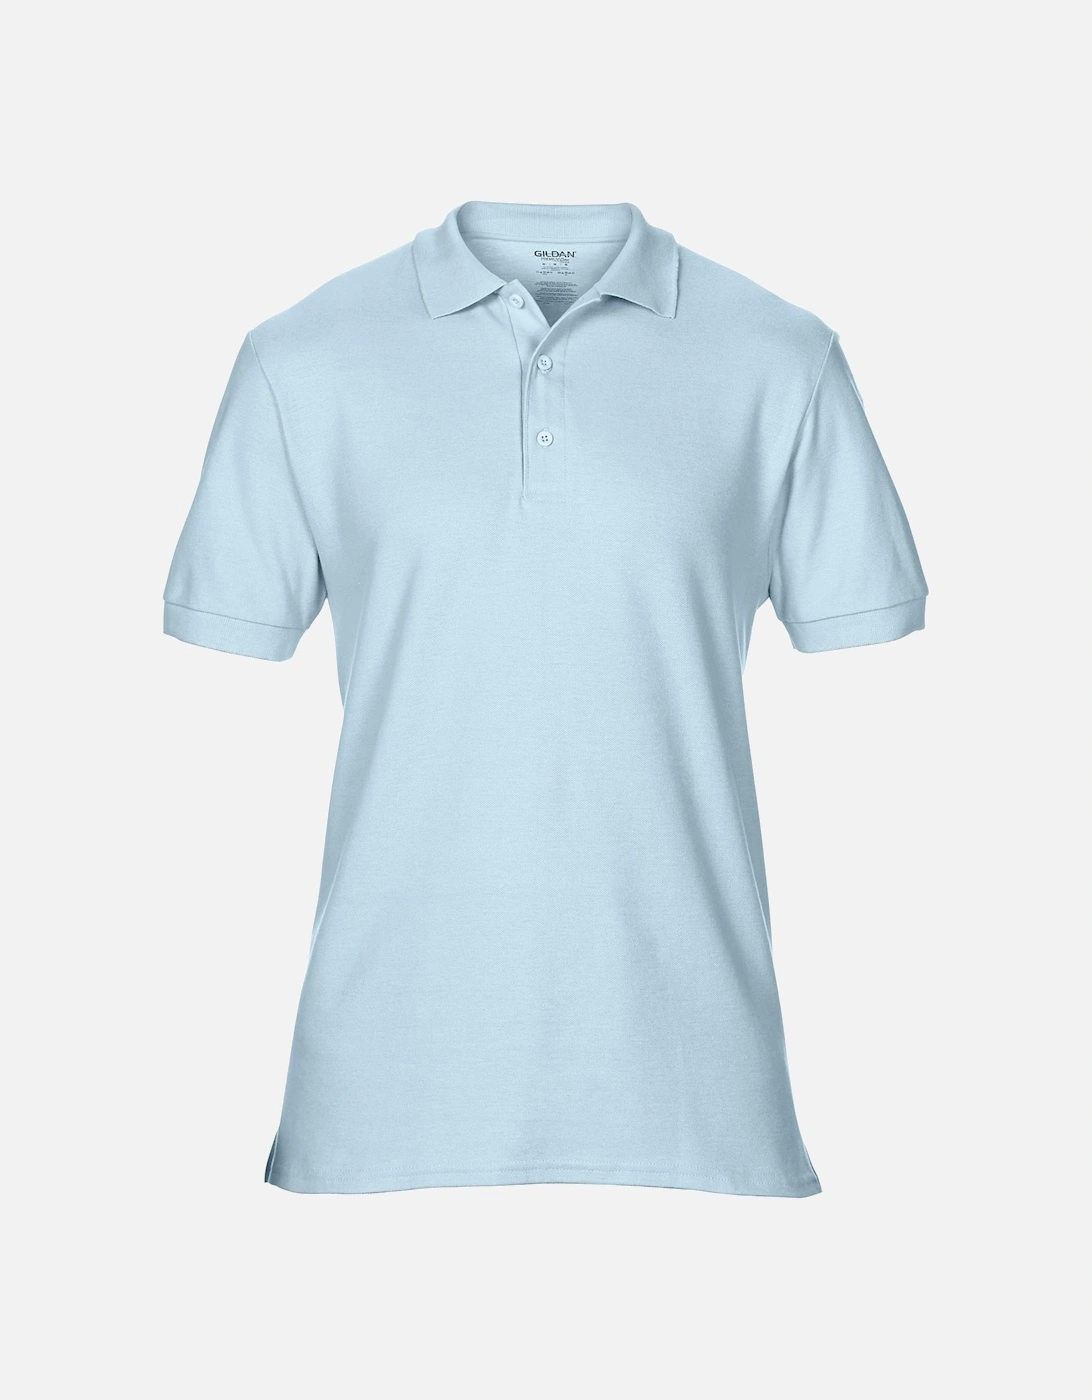 Mens Premium Cotton Sport Double Pique Polo Shirt, 4 of 3